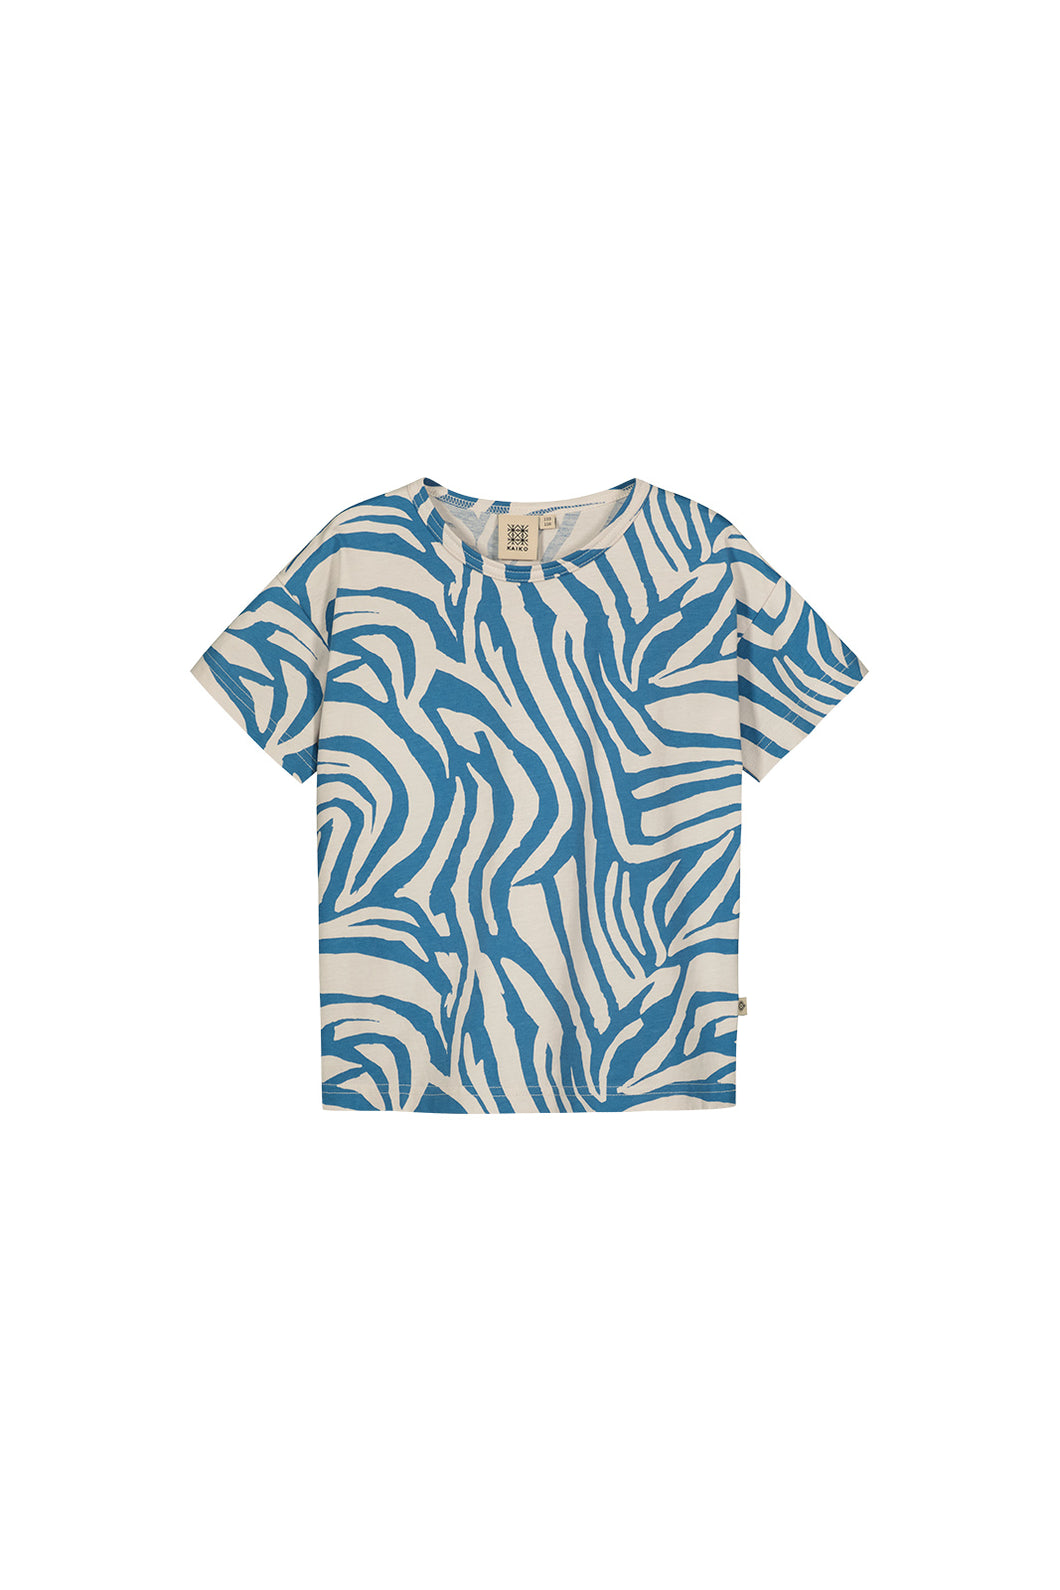 Kaiko Chillax T-shirt, Zebra Blue